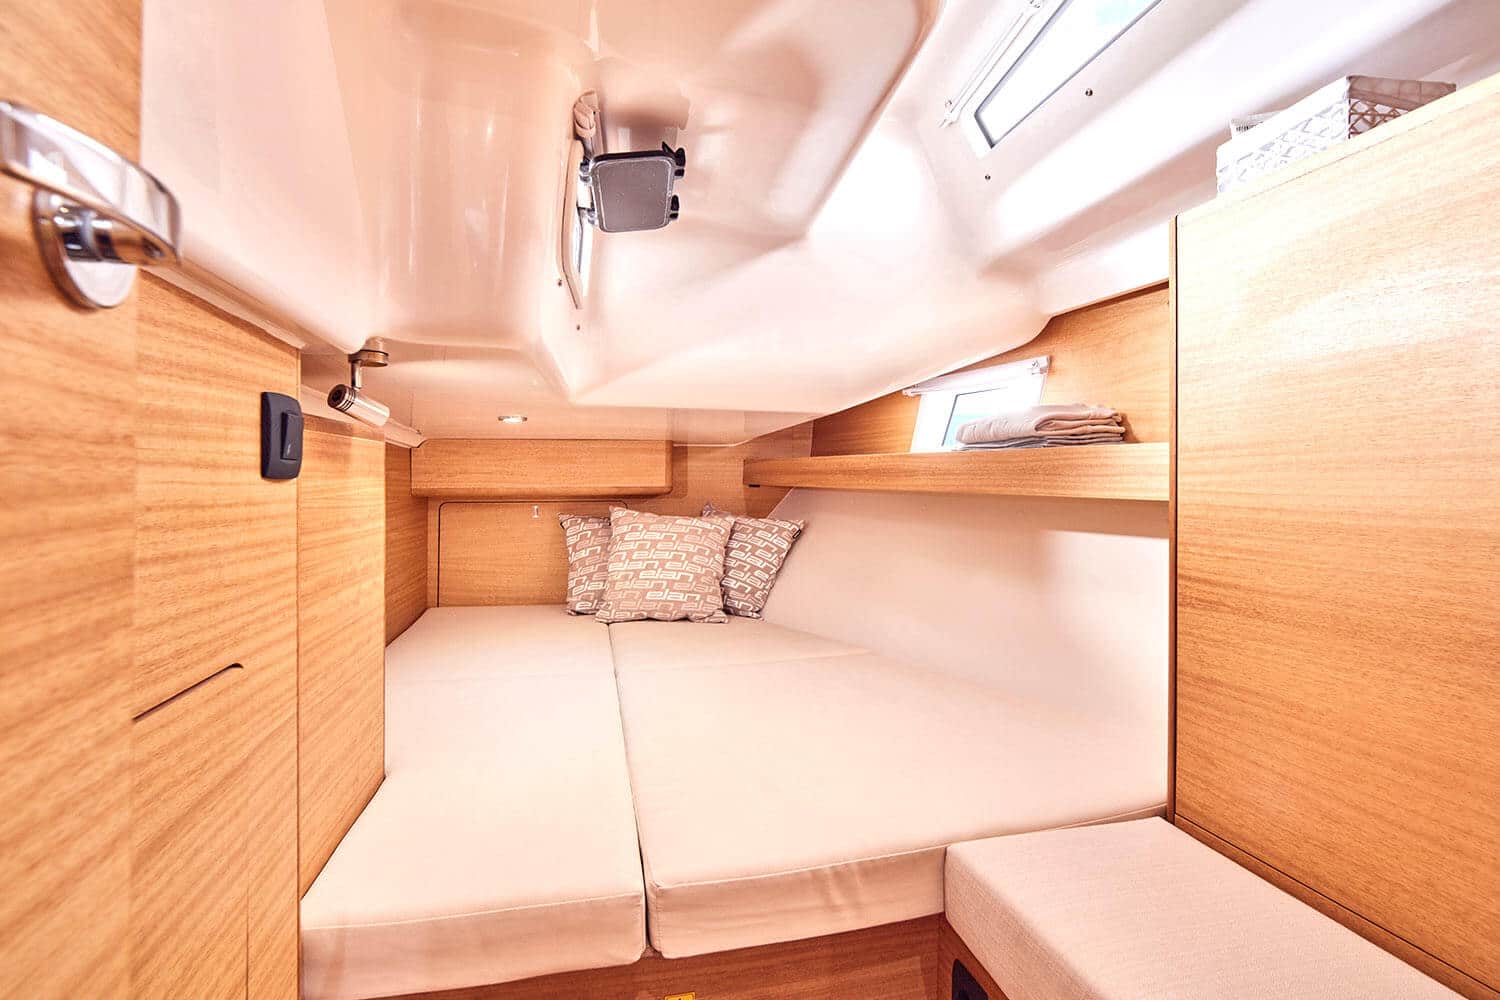 Innenansicht eines modernen Wohnmobils mit gemütlichem Schlafbereich mit gepolstertem Bett, Stauschränken und sanfter Beleuchtung, die an eine Segelyacht erinnert.